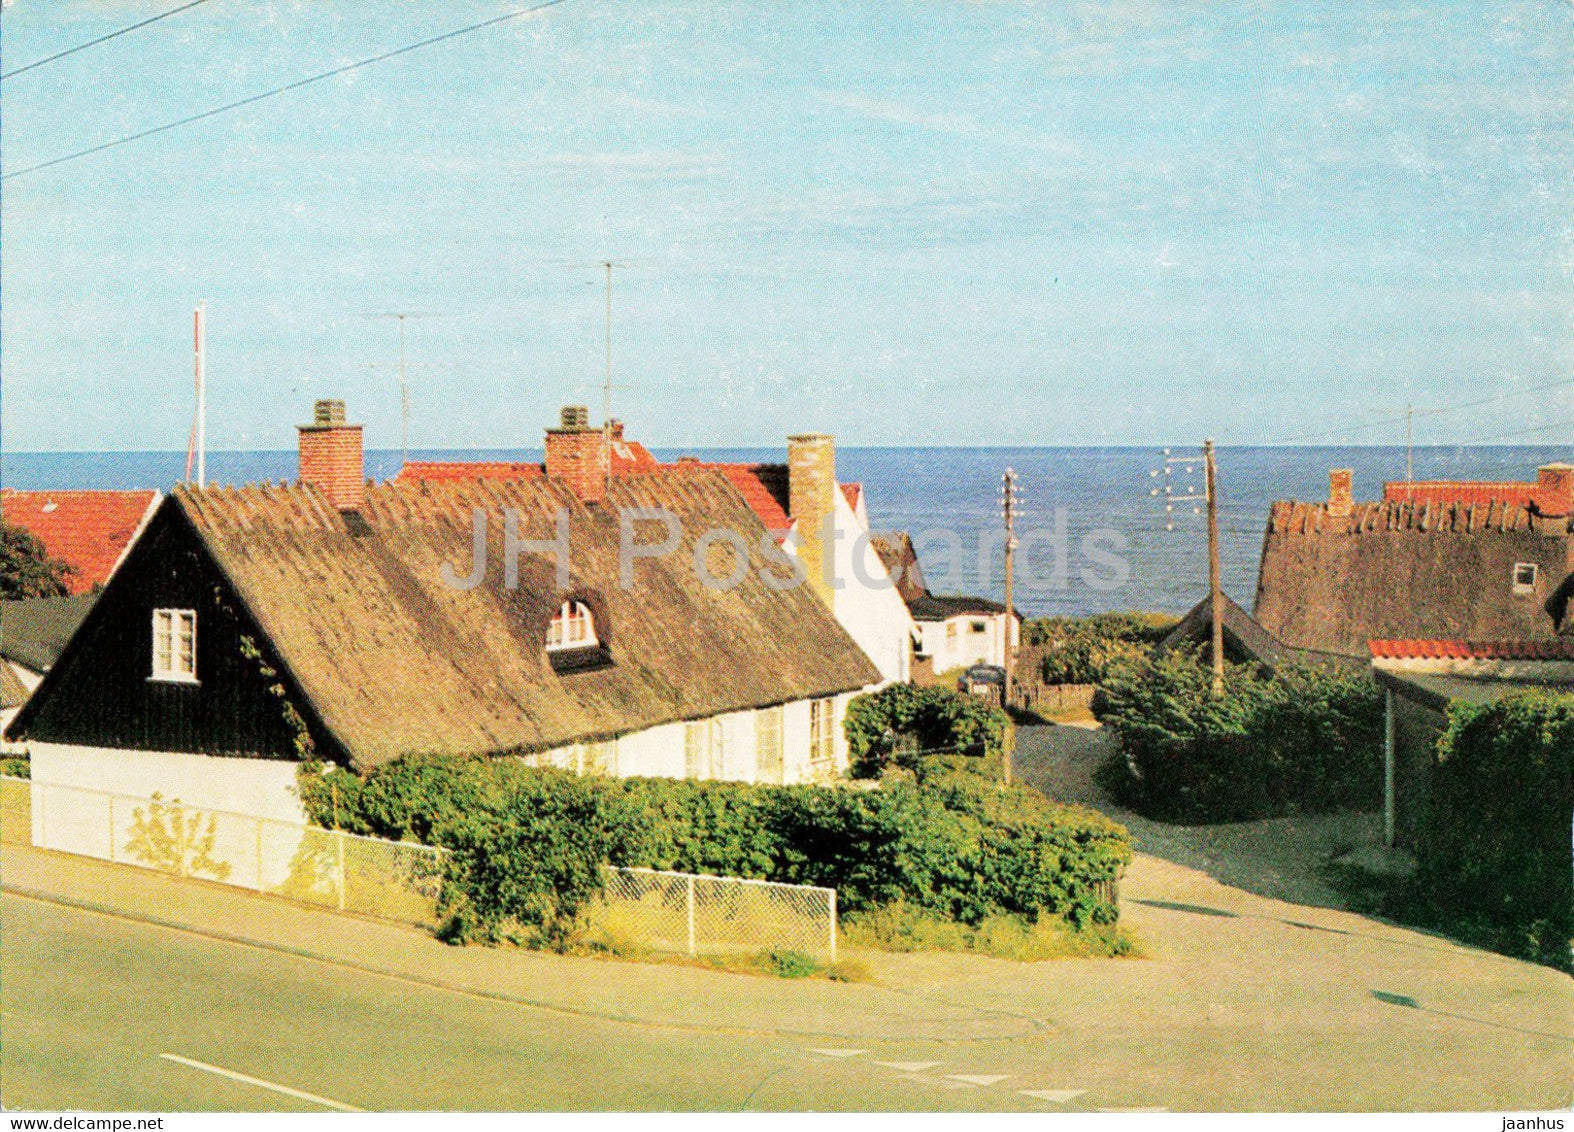 Tisvildeleje - village - Denmark - unused - JH Postcards